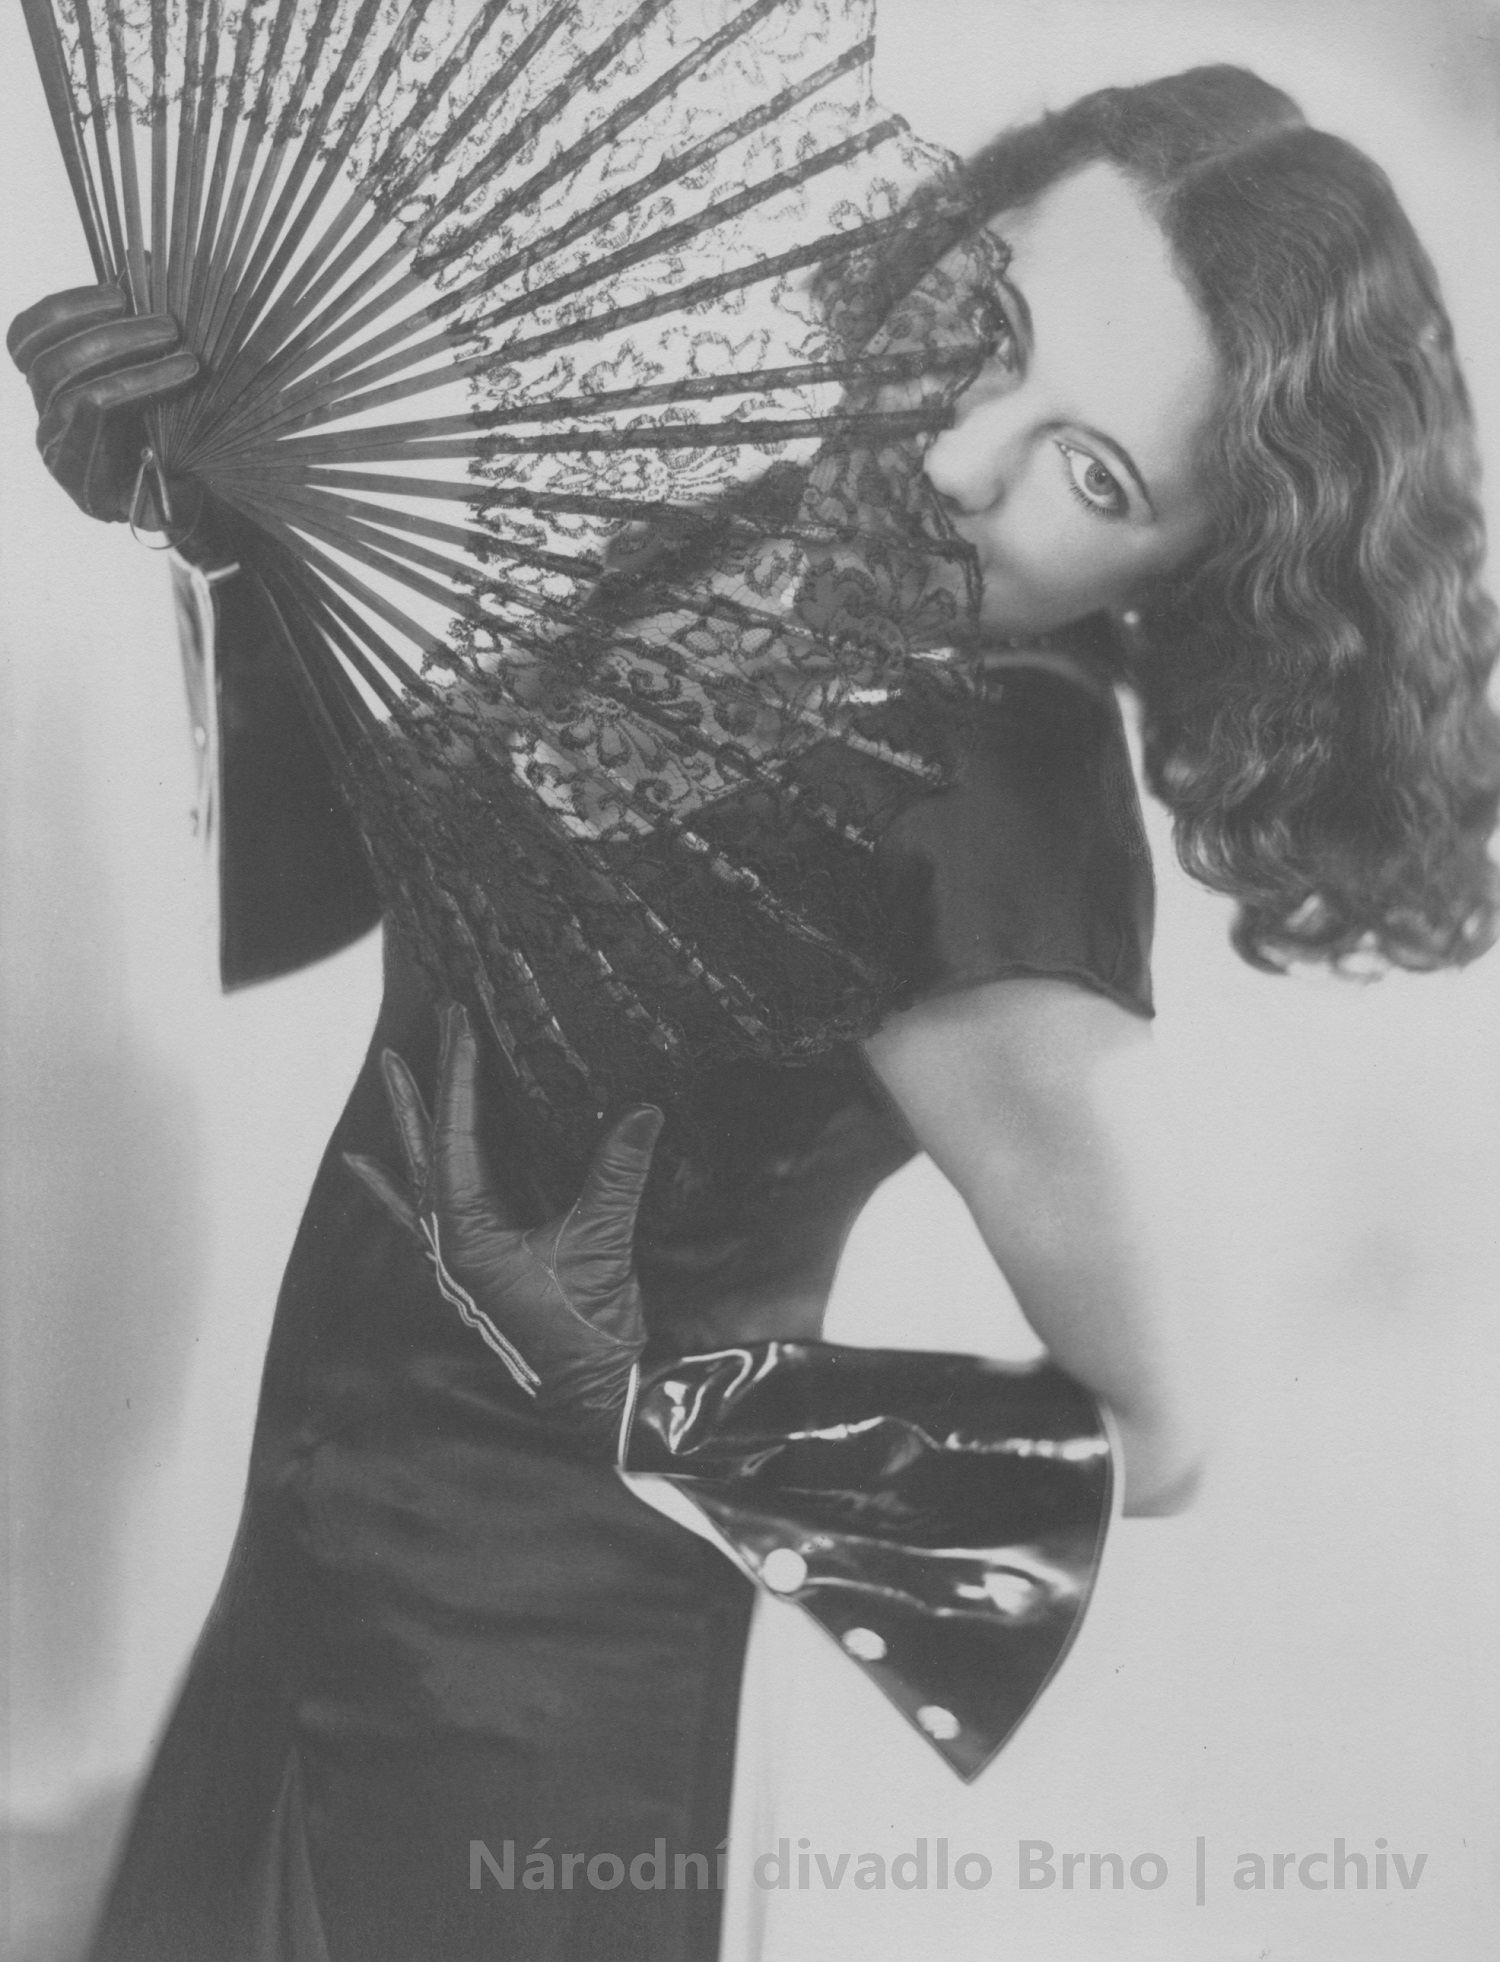 Marie Waltrová na ateliérové fotografii (1932), fotograf neznámý. Archiv NdB.